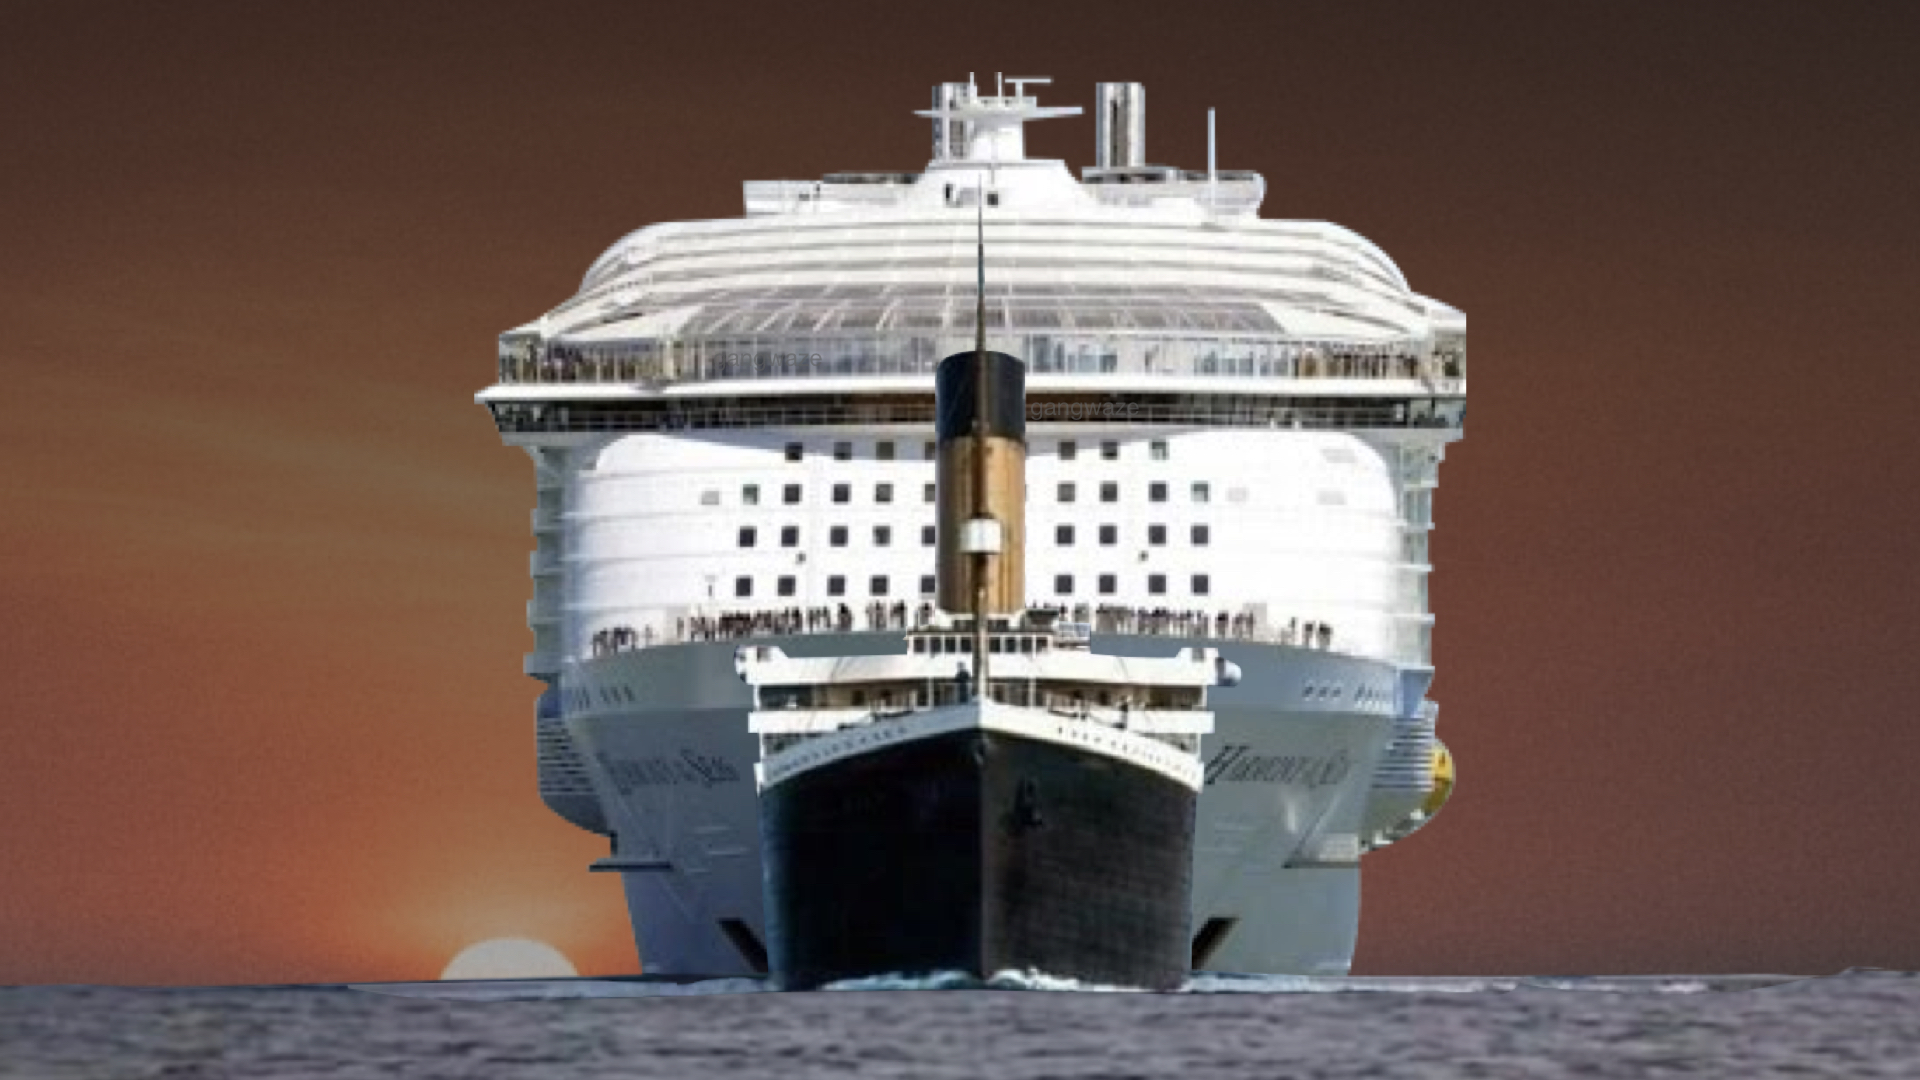 Titanic vs Modern Cruise Ship Size Comparison